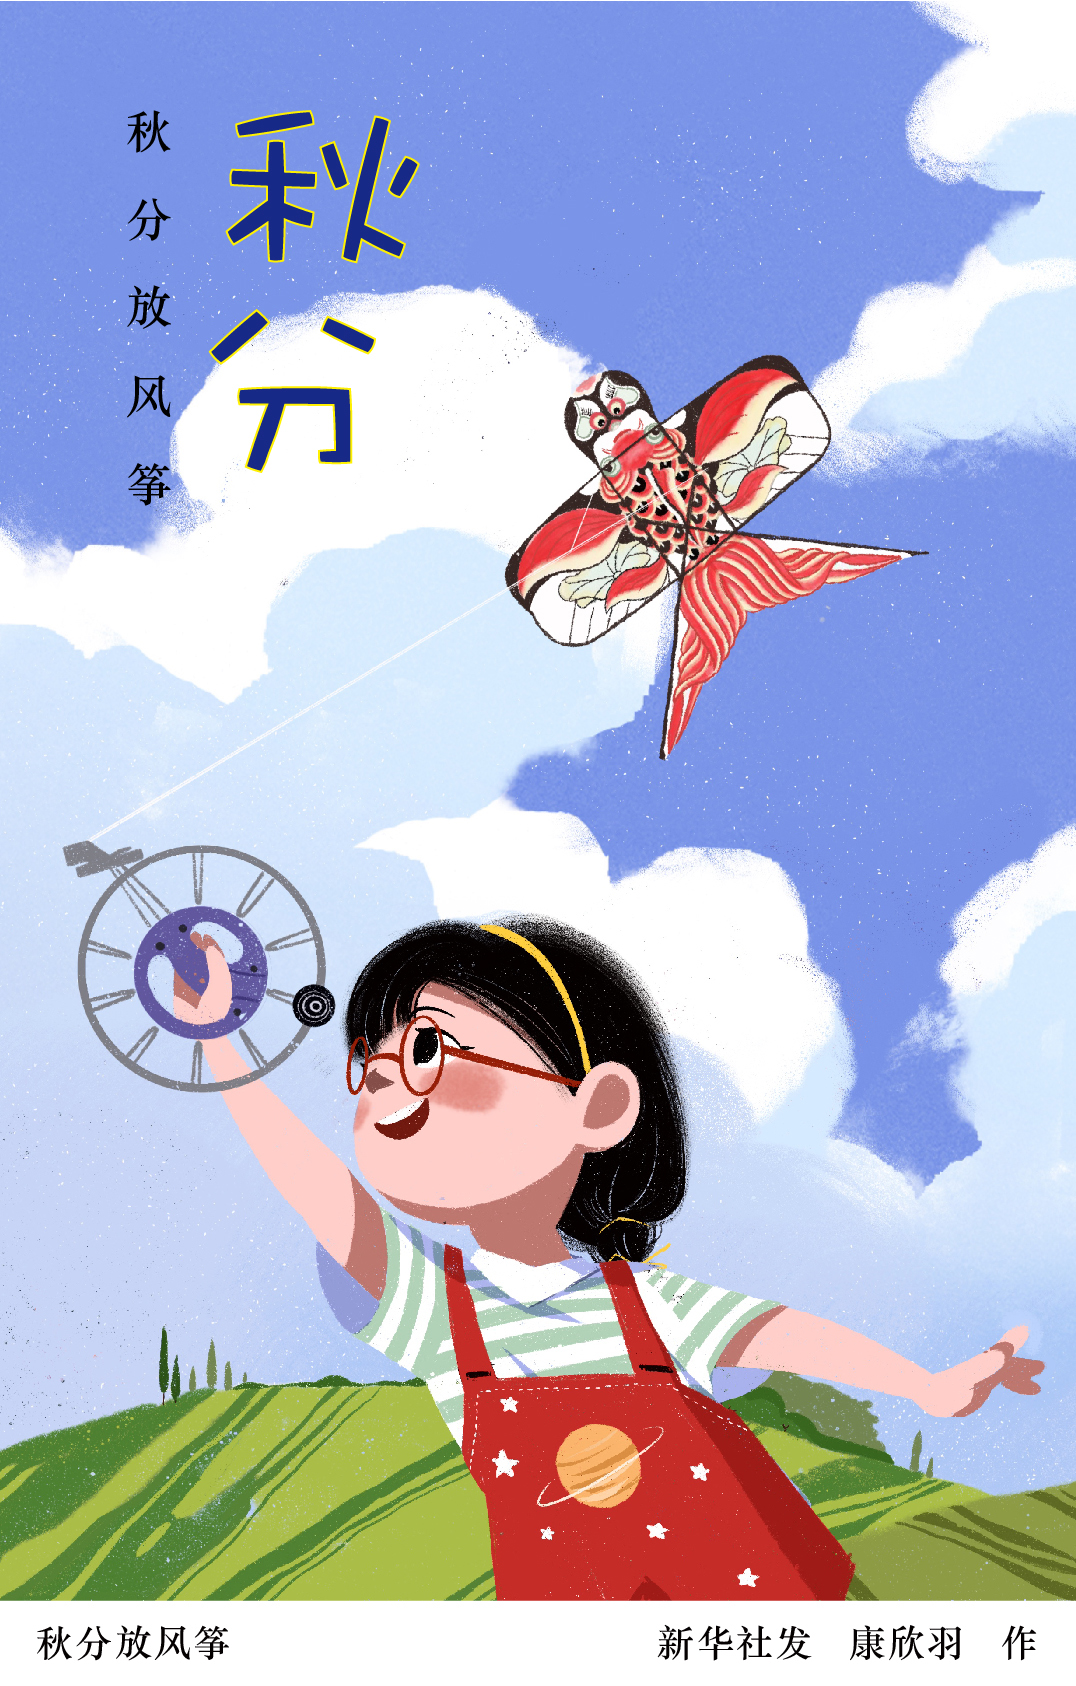 新华社图表,北京,2022年9月22日(插画)秋分放风筝燕将明日去,秋向